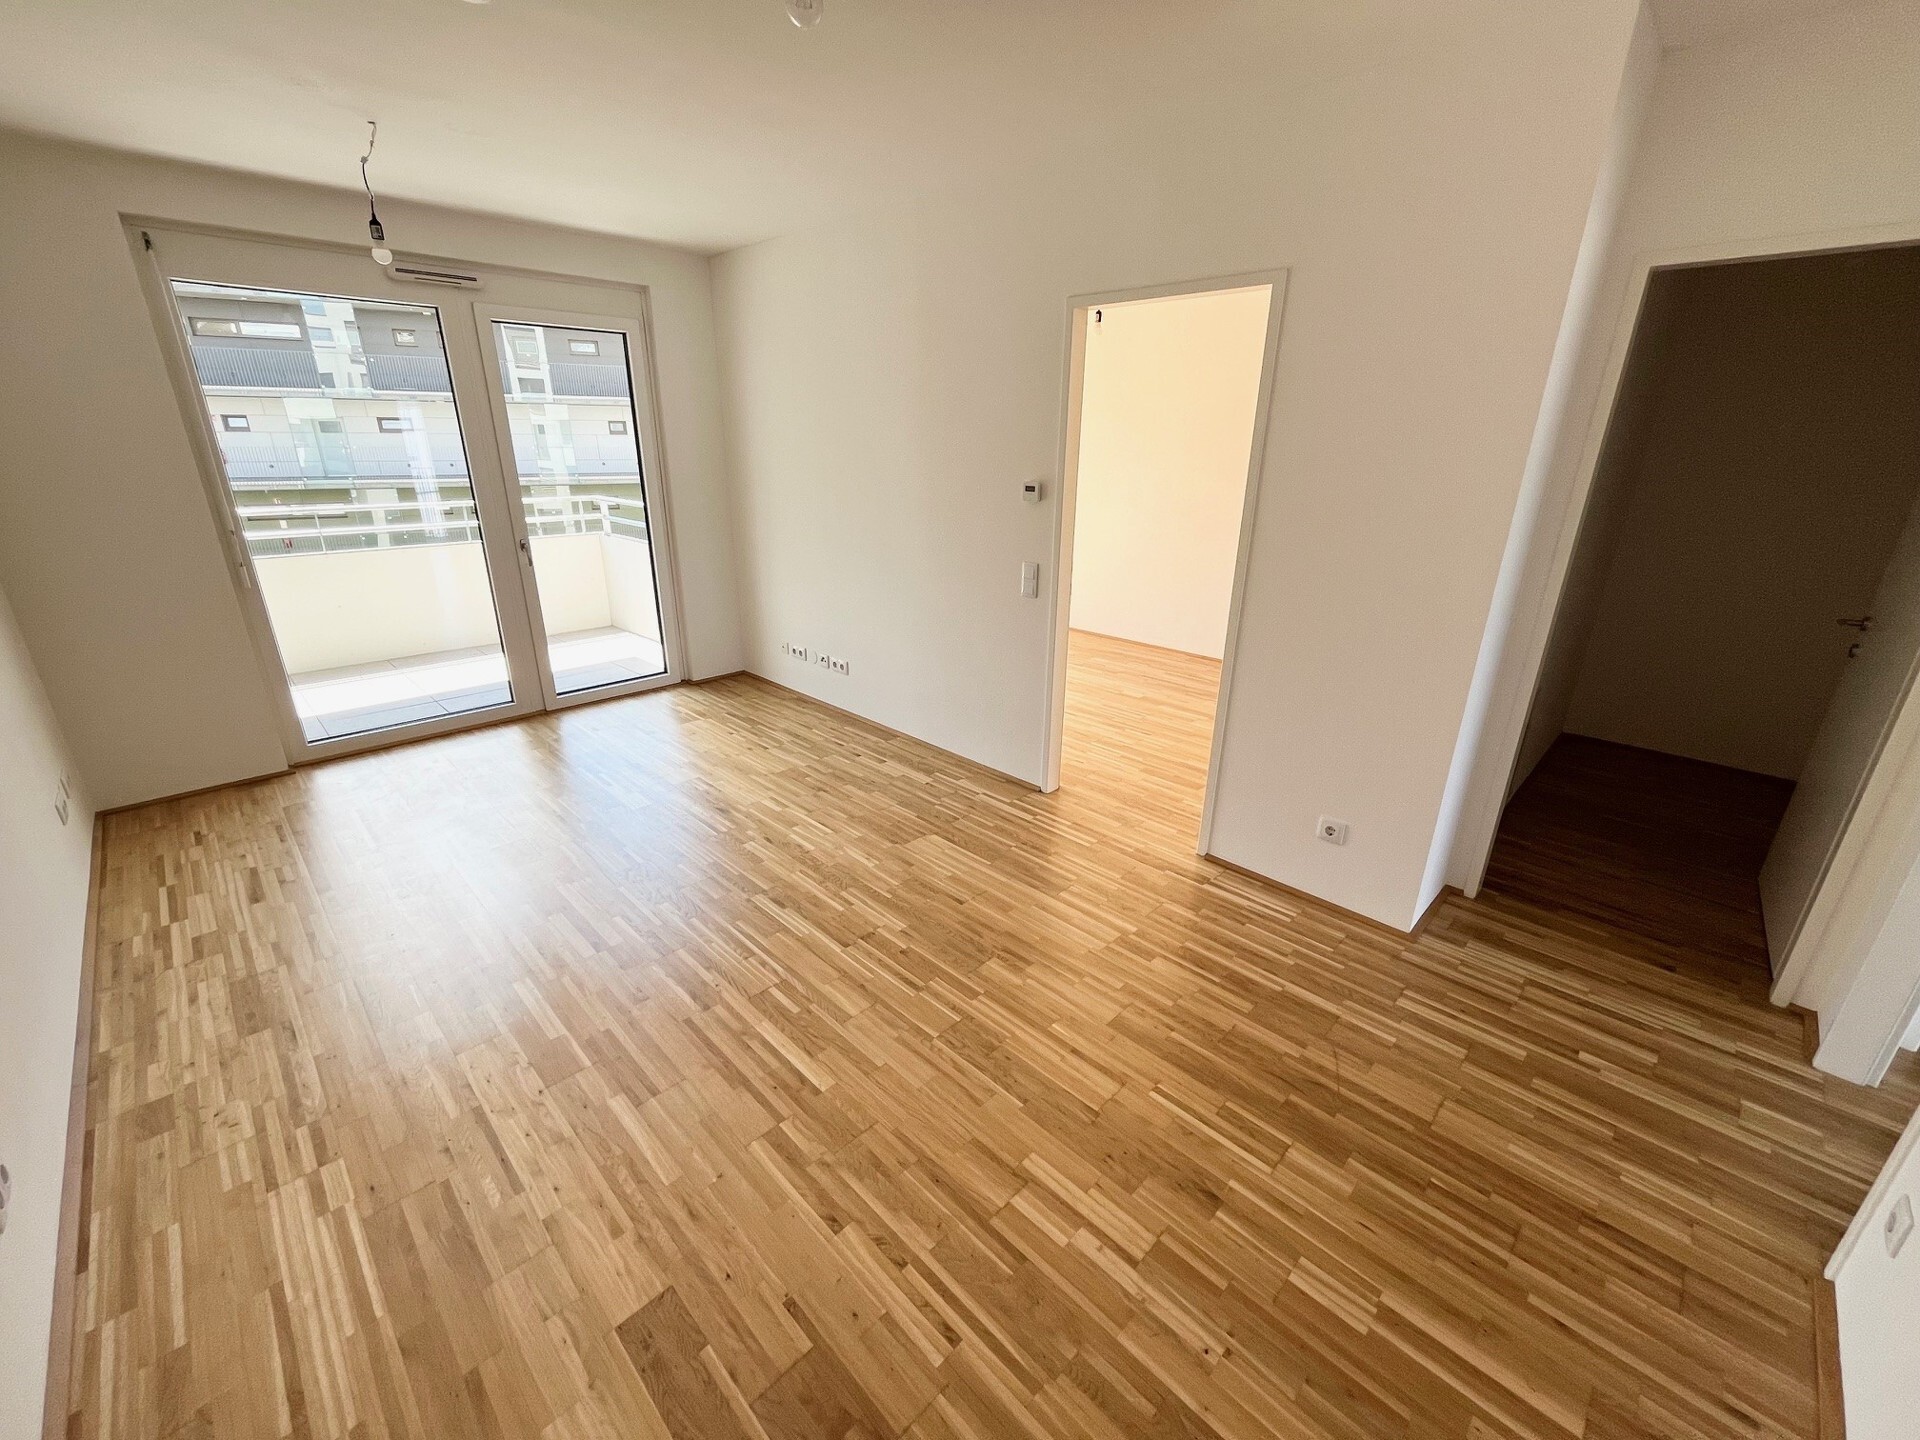 2-Zimmer-Wohnung + Balkon - 1.Monat mietfrei - 8020 Graz